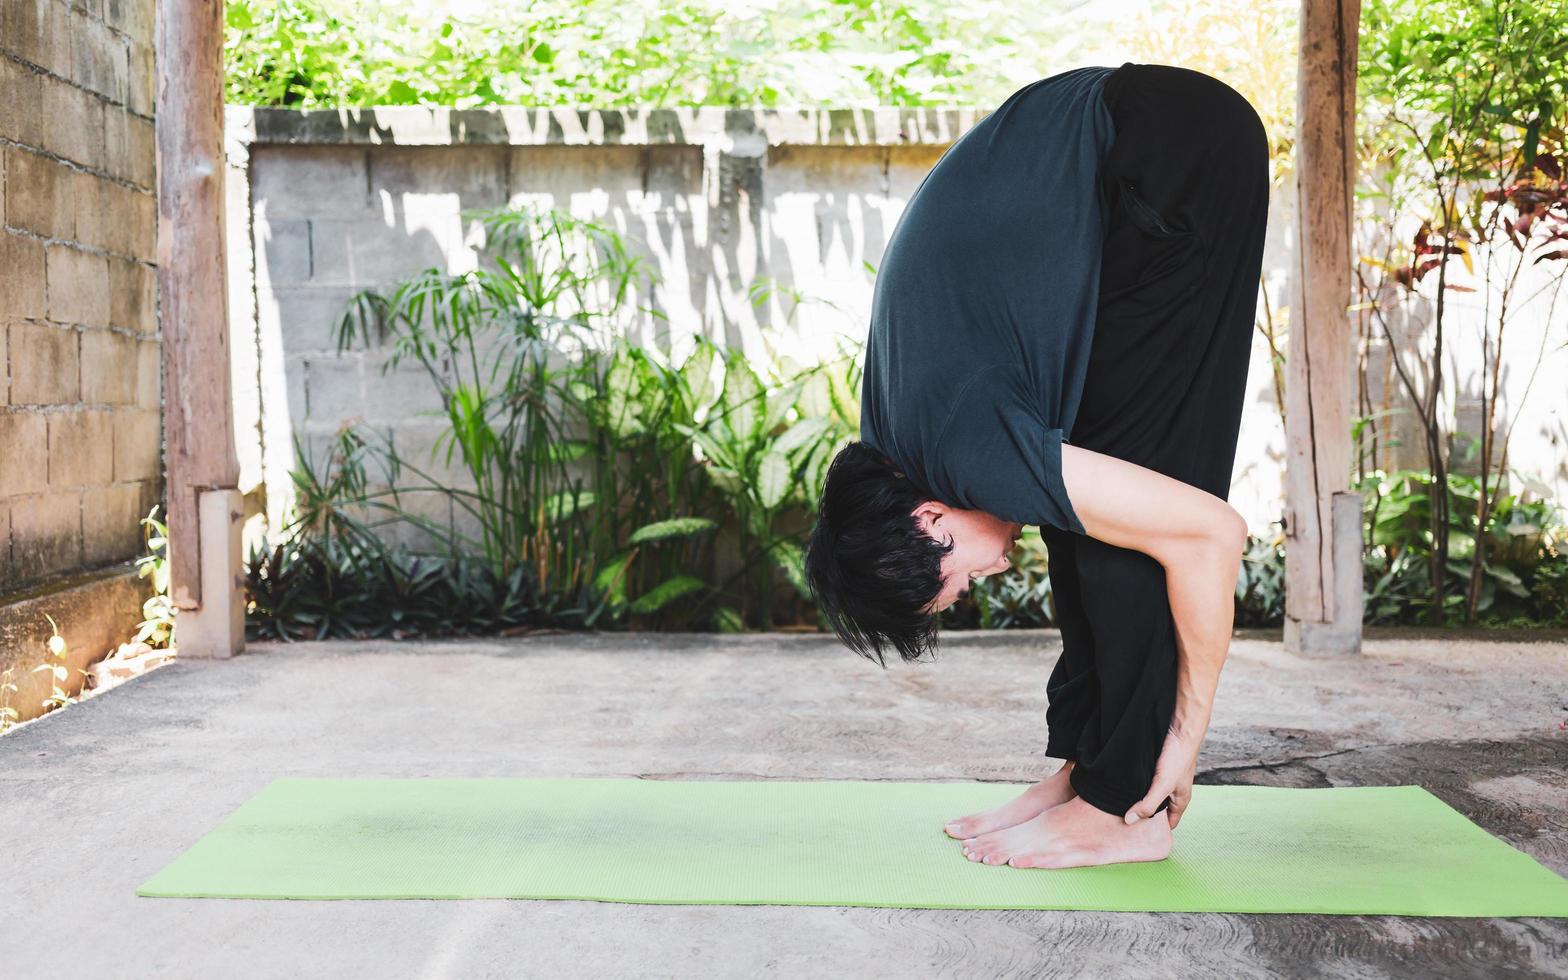 concepto de vida saludable de un joven asiático practicando yoga asana uttanasana - pose de plegado hacia adelante, haciendo ejercicio, posa en una alfombra de yoga verde. ejercicio al aire libre en el jardín. estilo de vida saludable foto